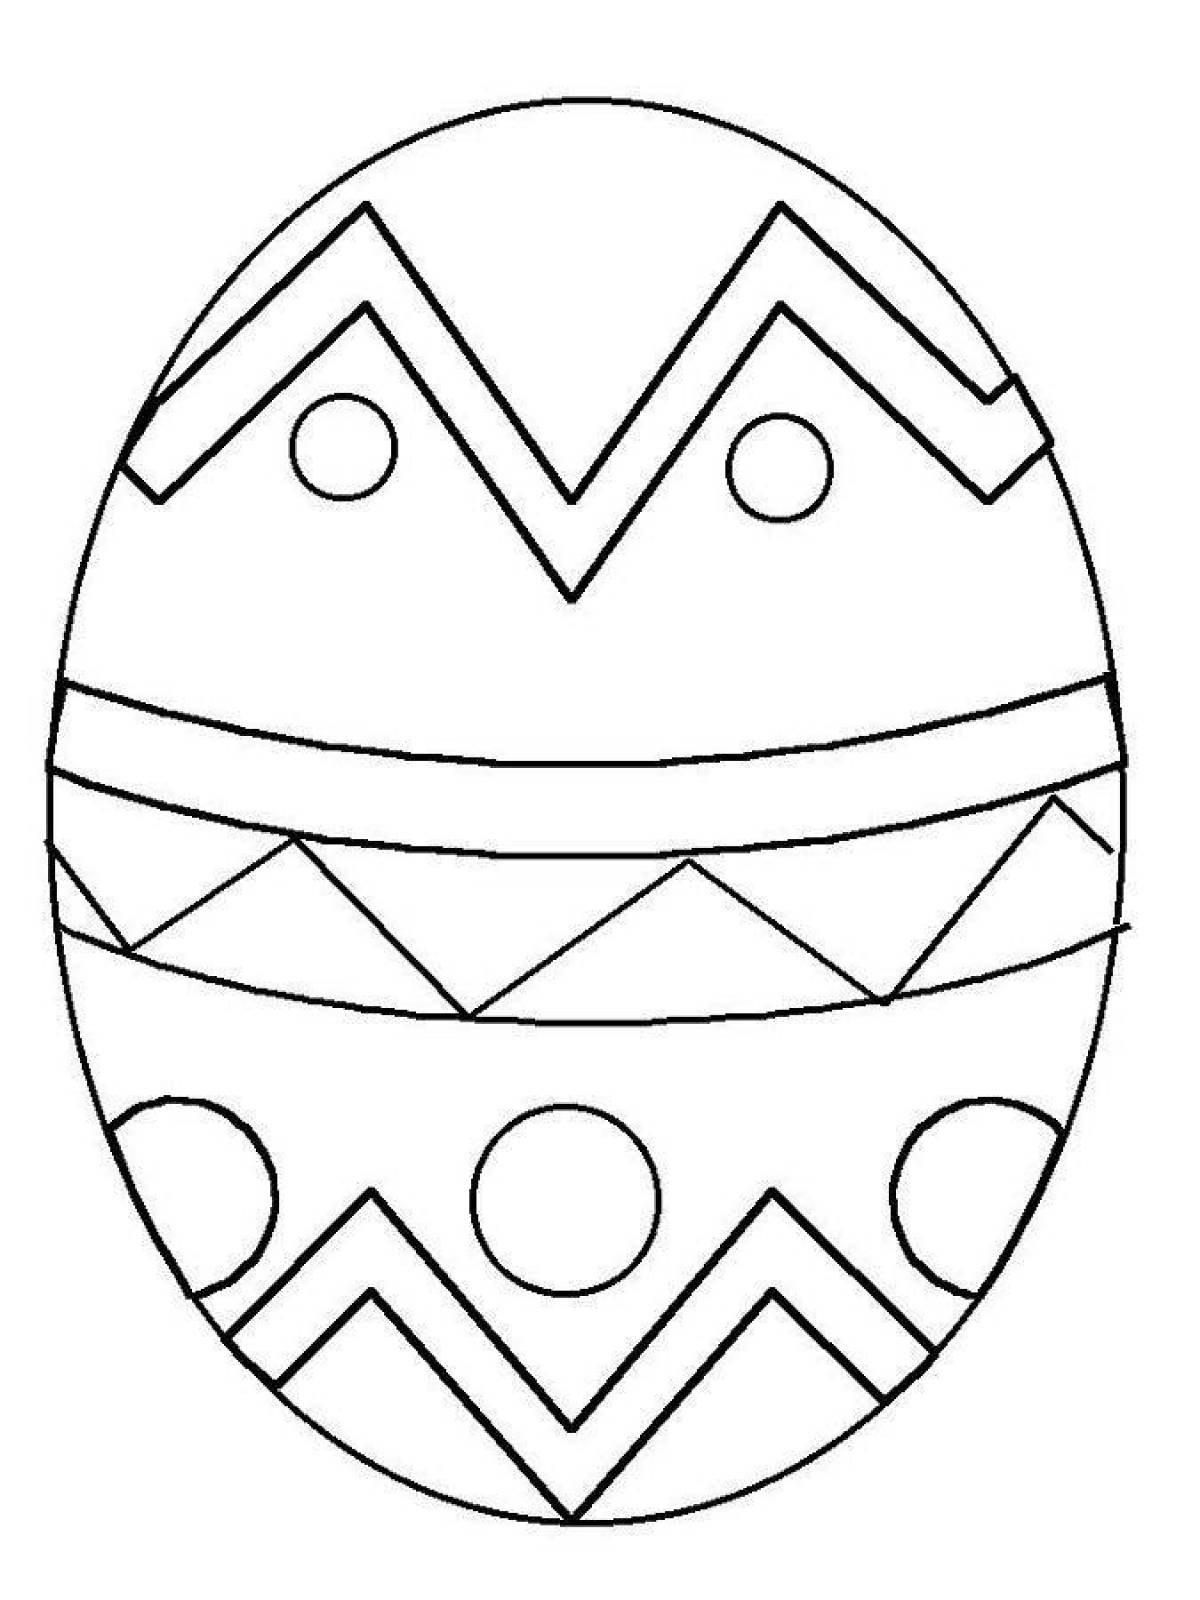 Юмористическая раскраска пасхальных яиц